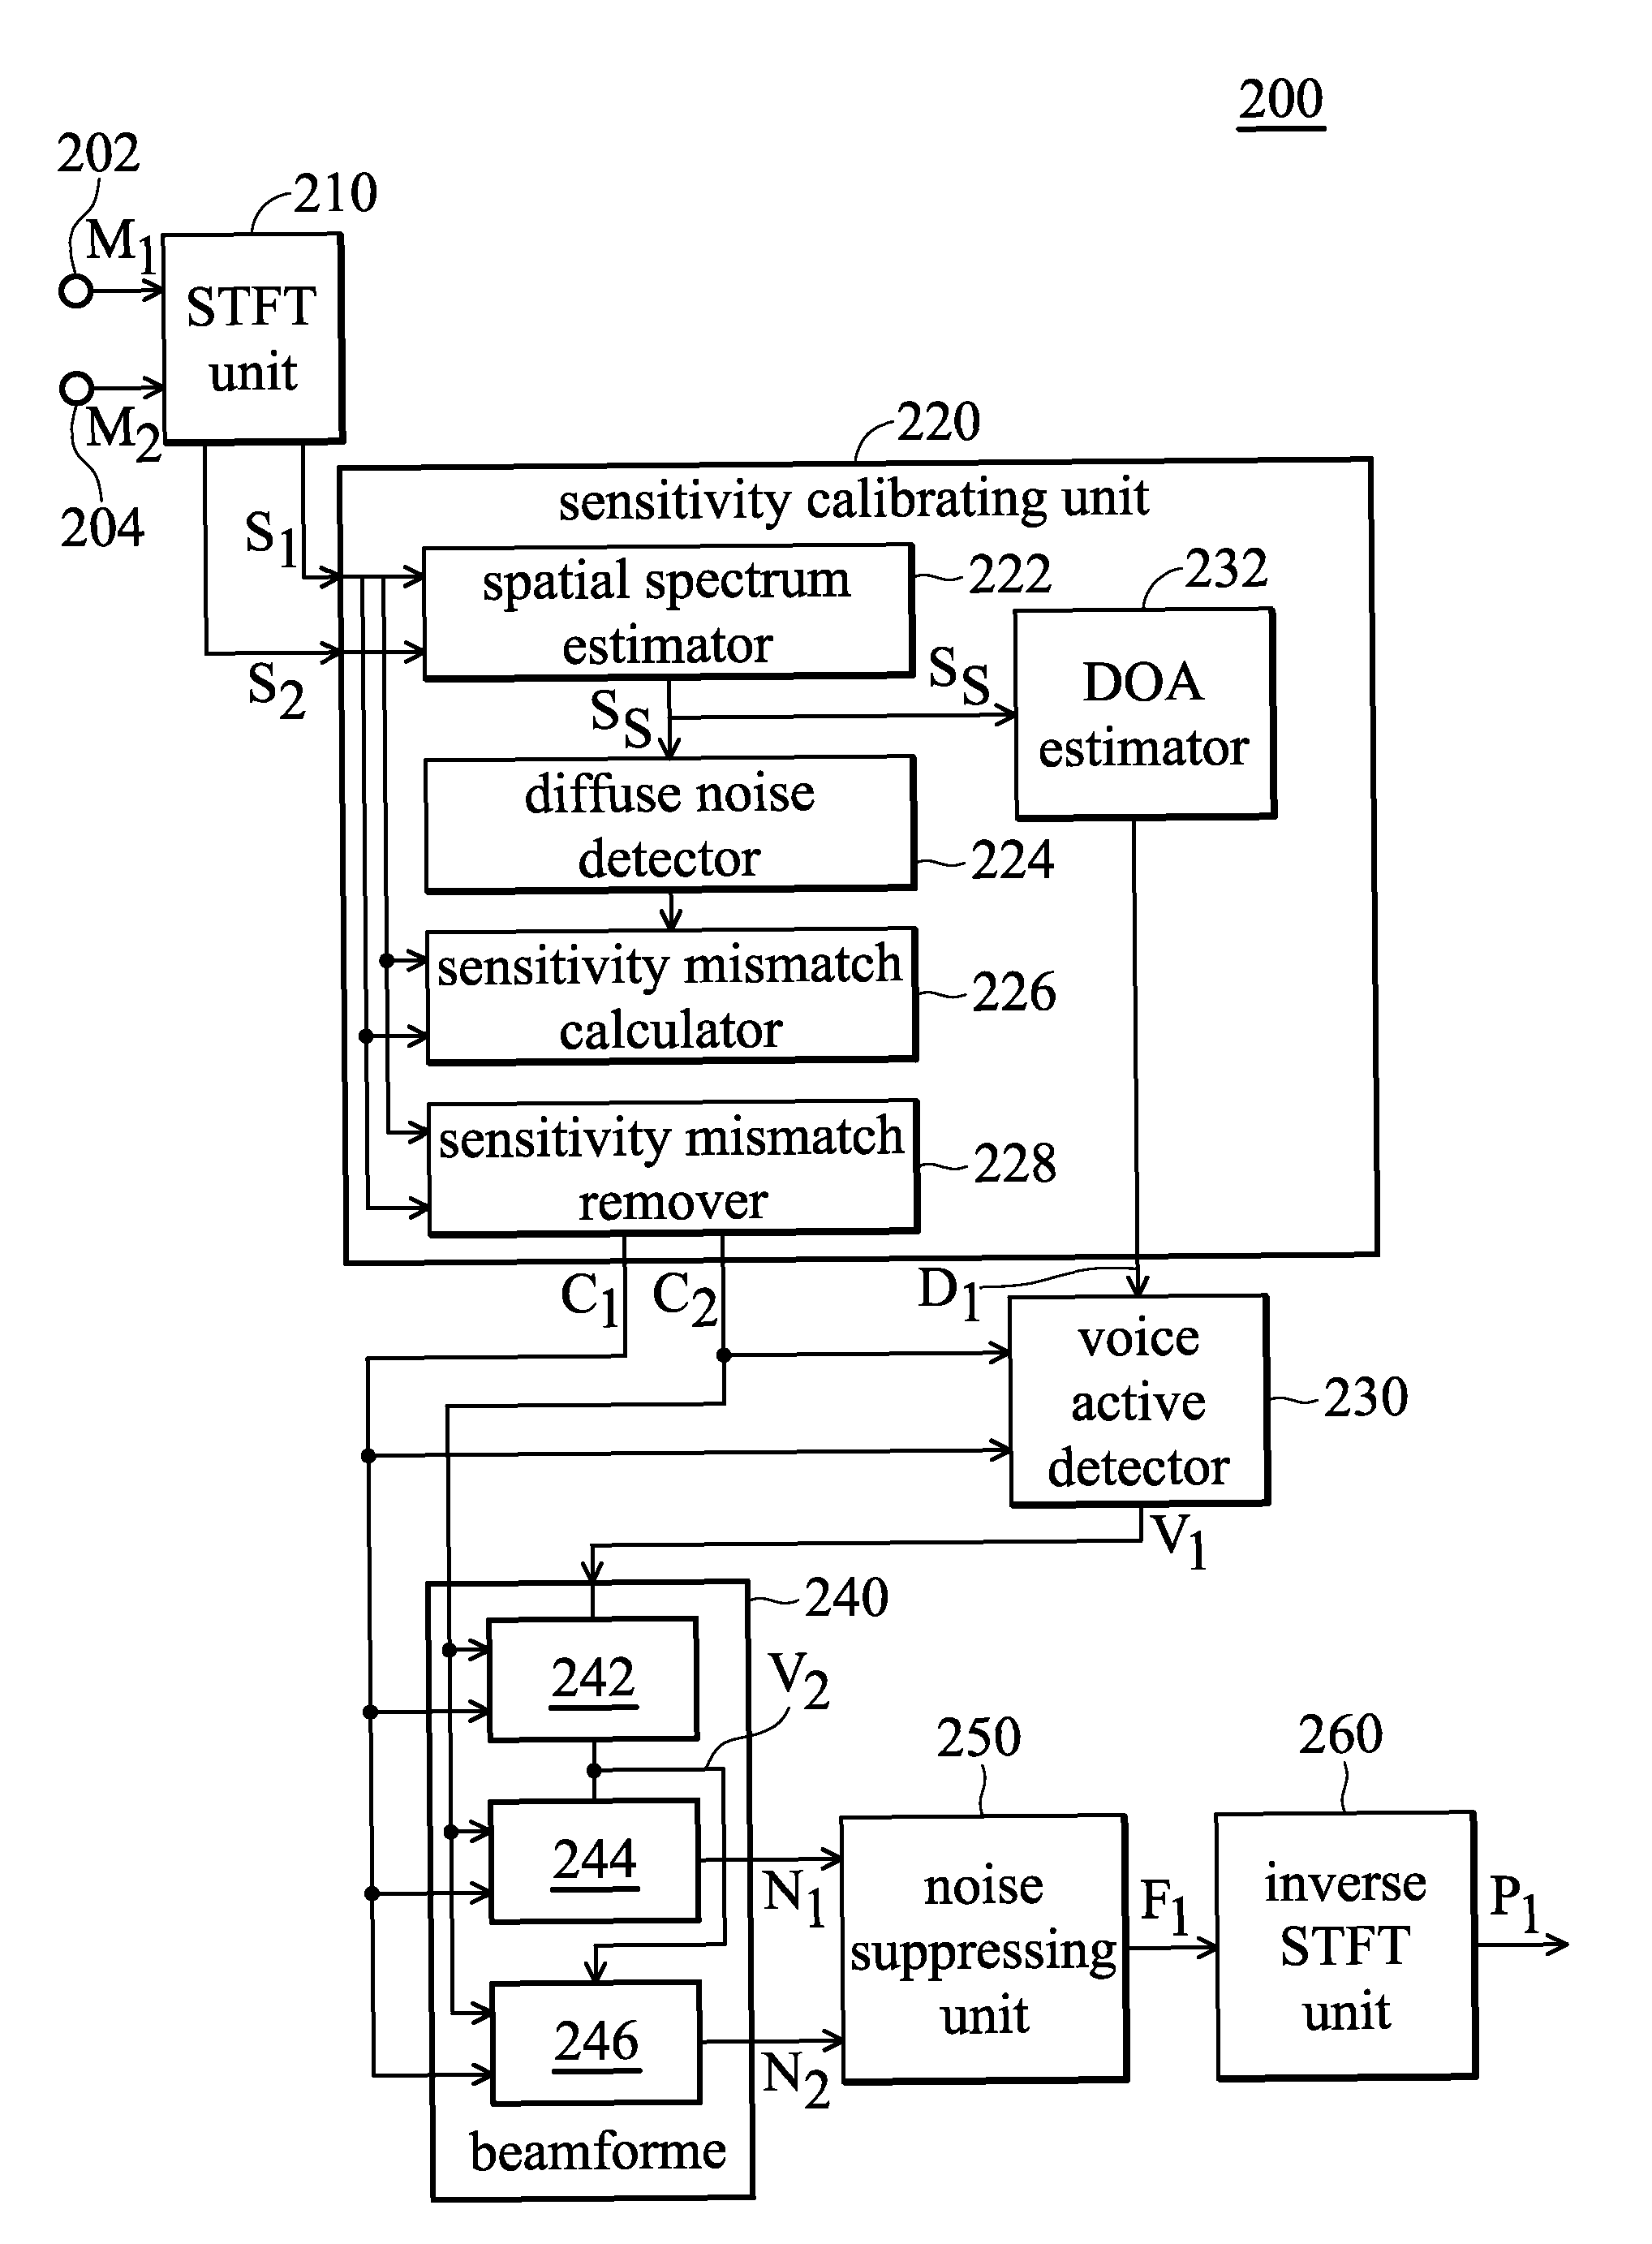 Audio processing apparatus and method